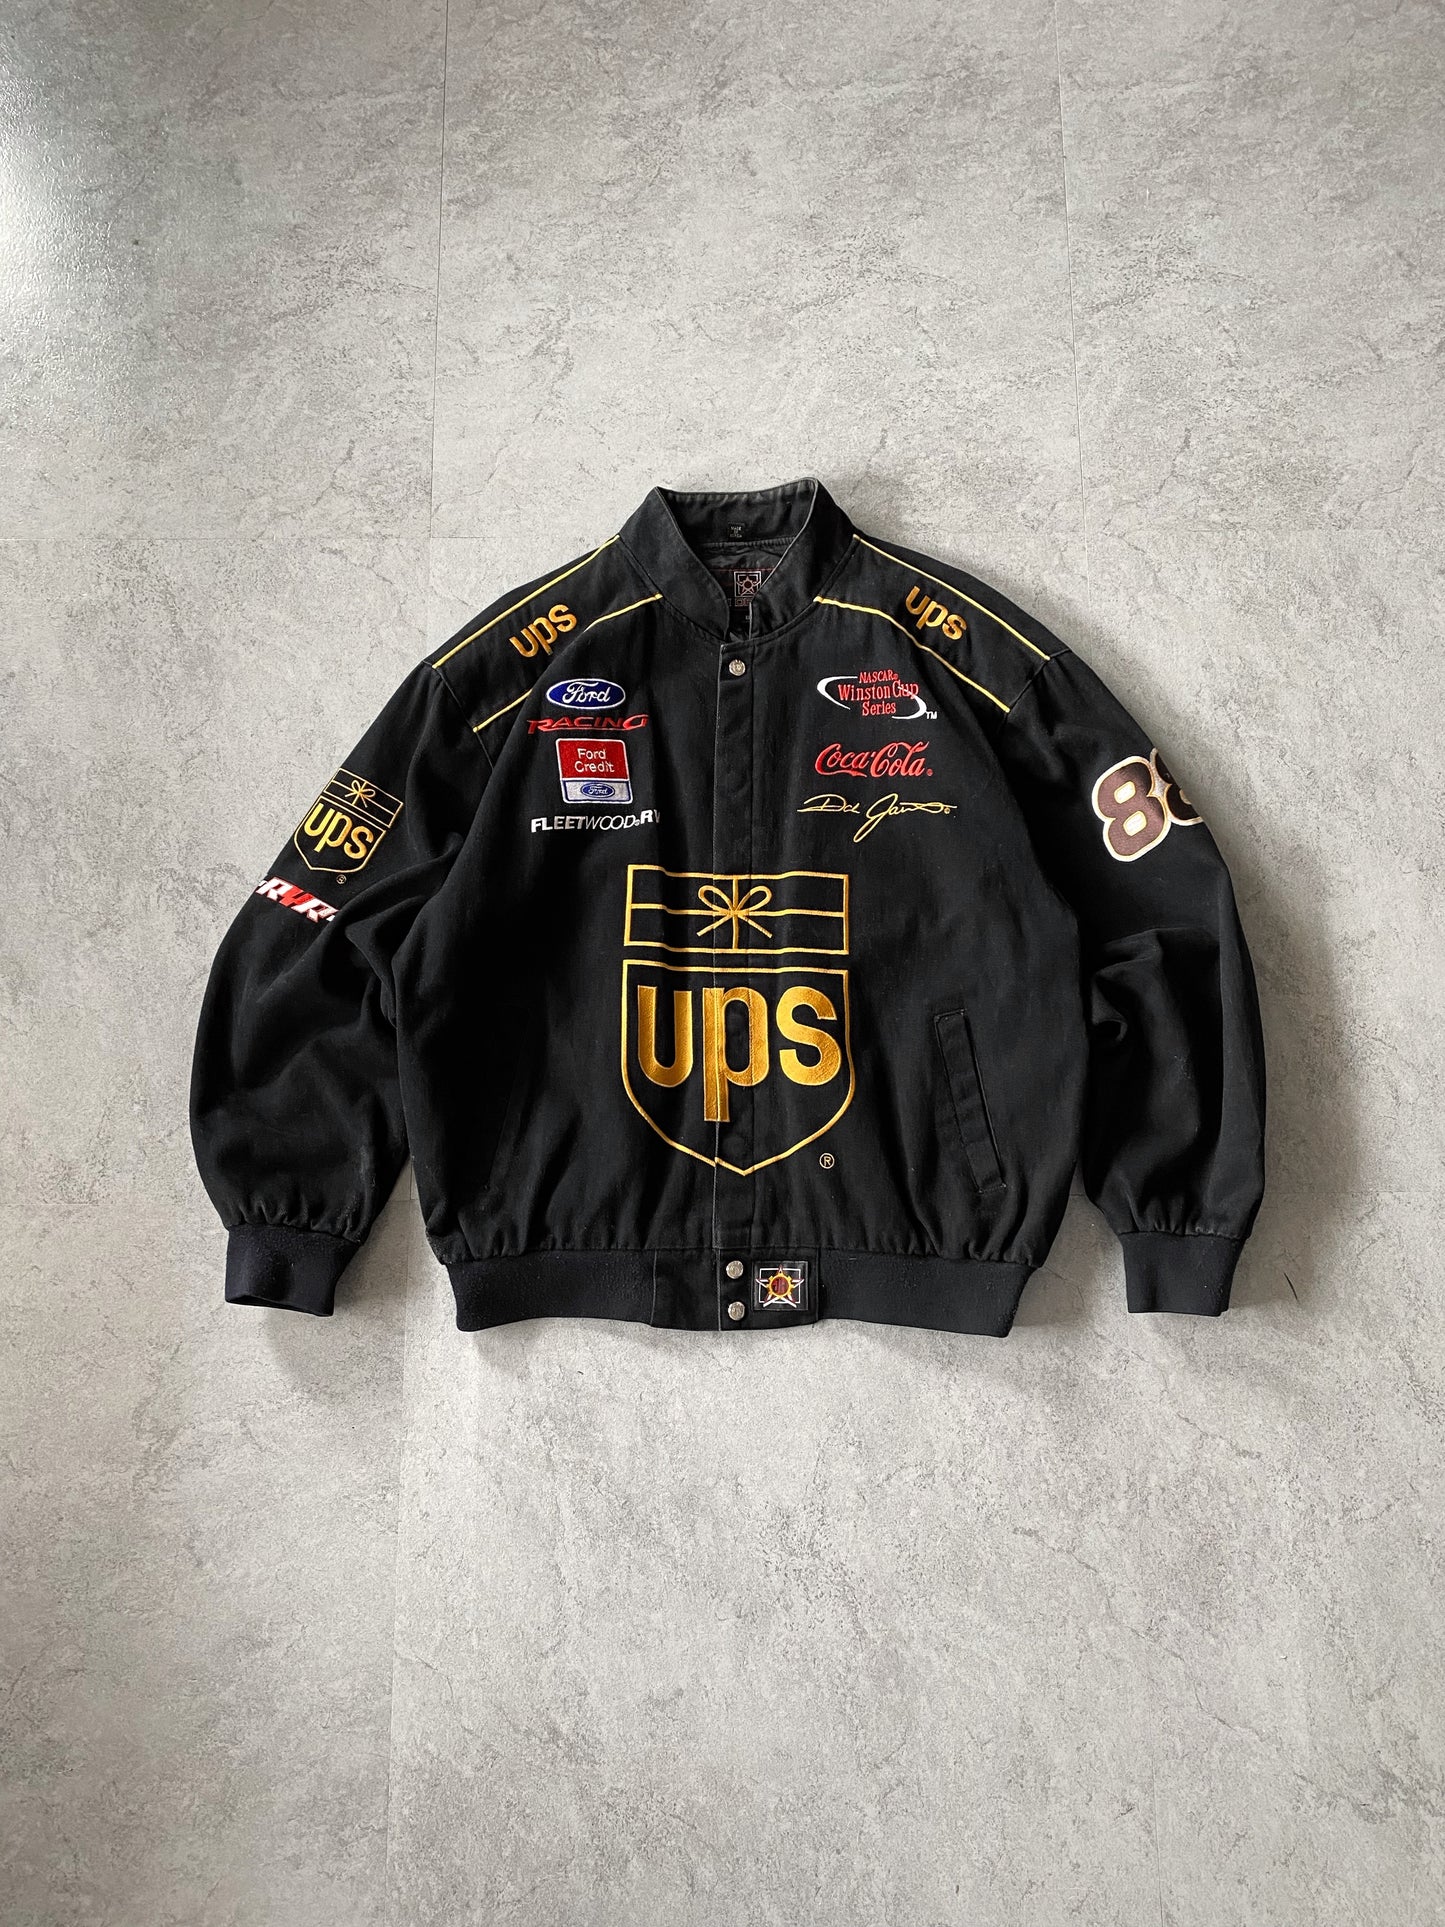 90s Vintage Dale Jarret UPS Nascar Racing Jacket